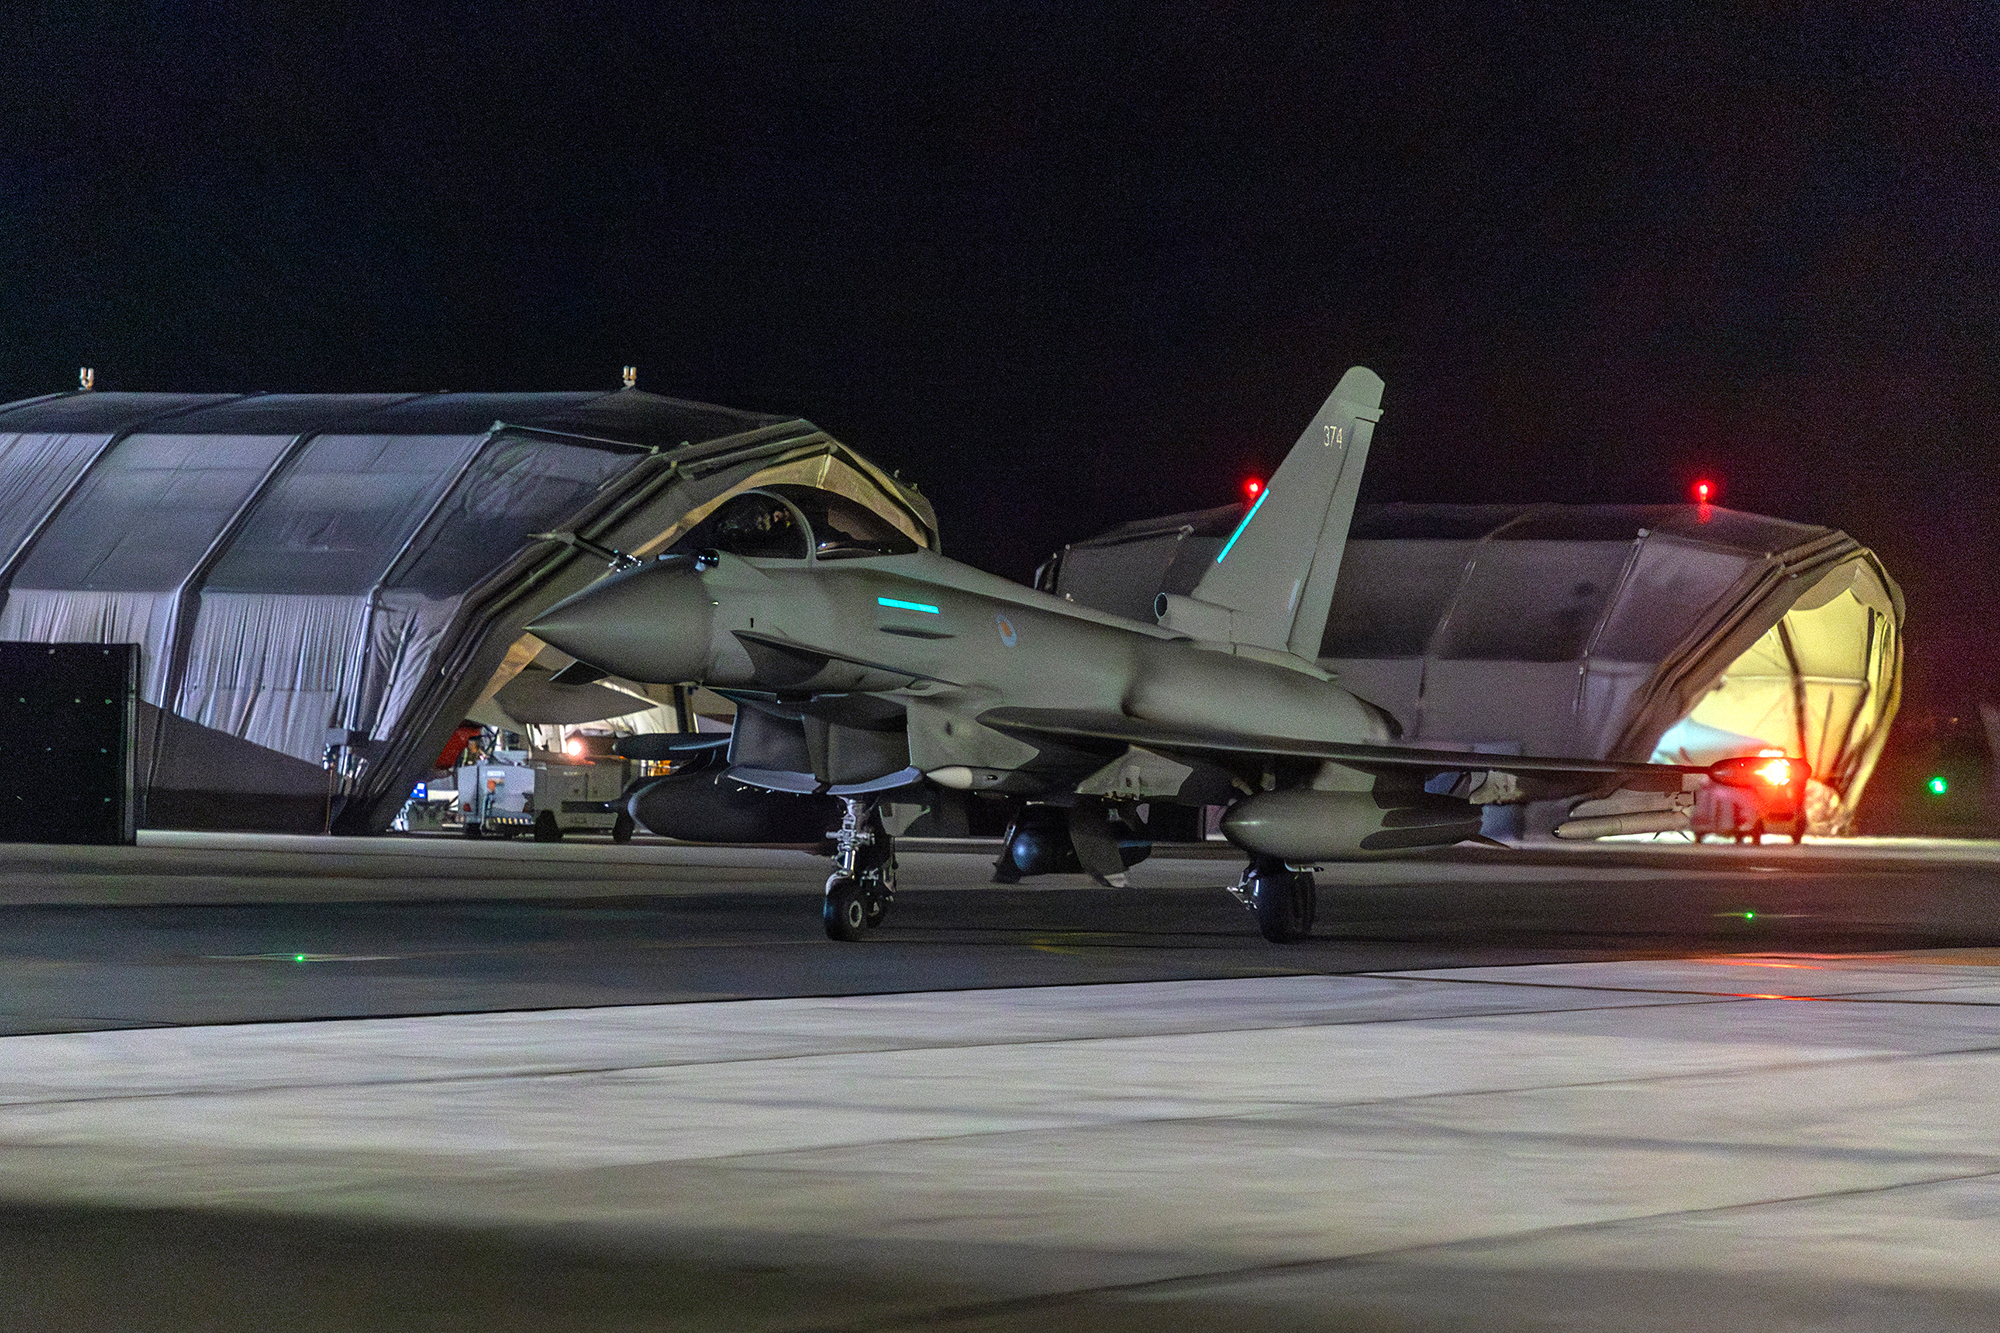 Das vom britischen Verteidigungsministerium veröffentlichte Bild zeigt die Rückkehr von Kampfflugzeugen zum britischen Militärflugplatz RAF Akrotiri auf Zypern, nachdem sie am Morgen des 12. Januar militärische Ziele im Jemen getroffen haben (Bild: Sgt Lee Goddard/British Ministry of Defence/AFP)